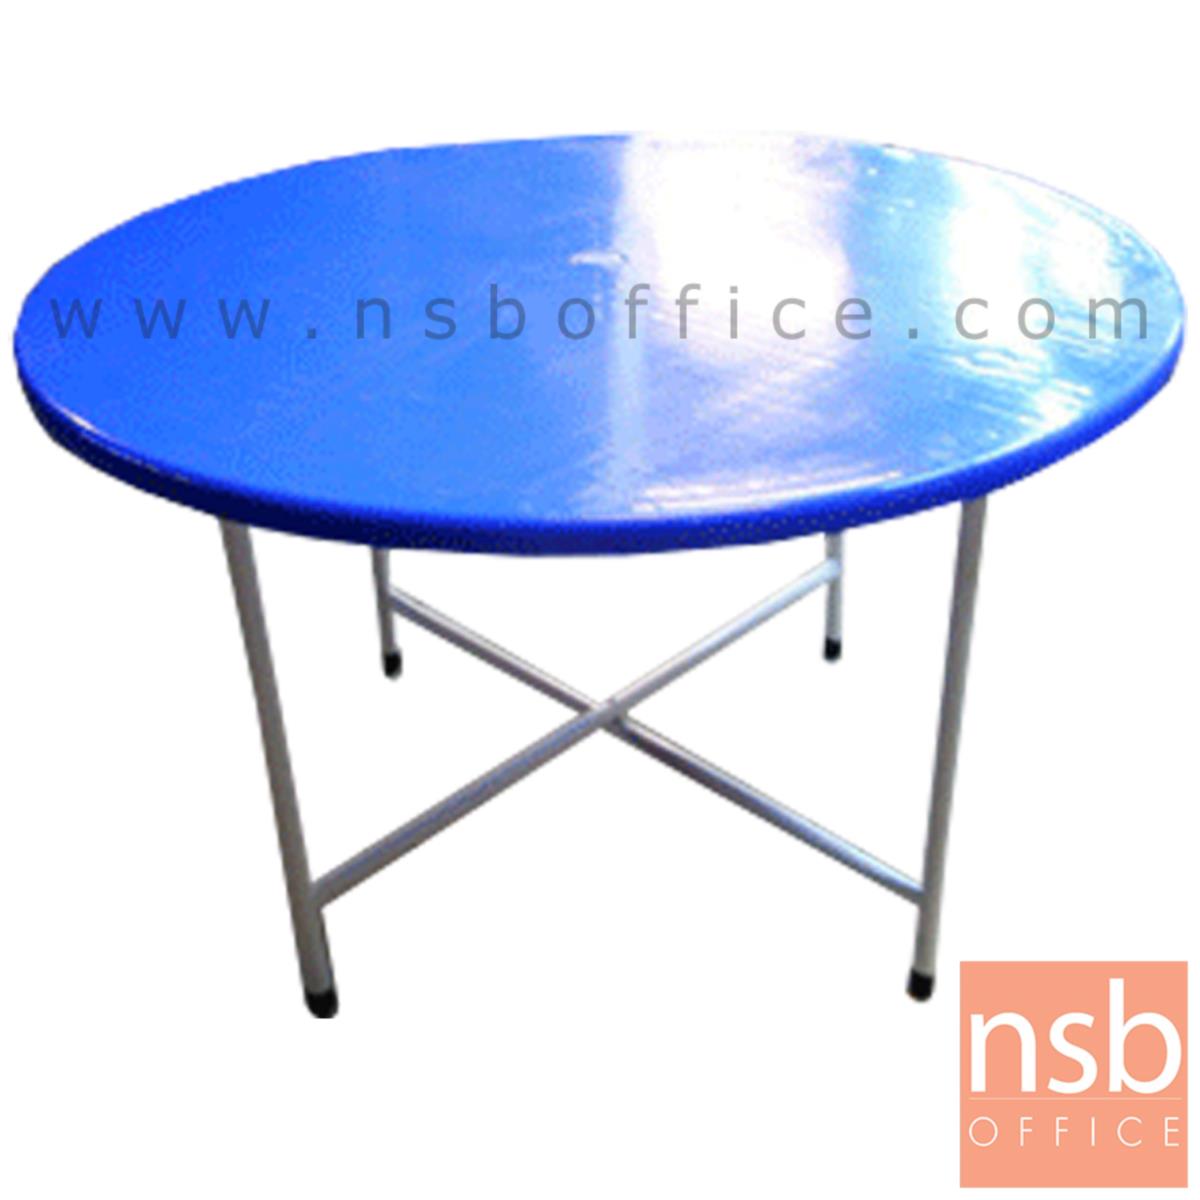 A07A048:โต๊ะพับจีนหน้าพลาสติก  ขนาด 120Di cm.  โครงขาเหล็กพ่นขาว